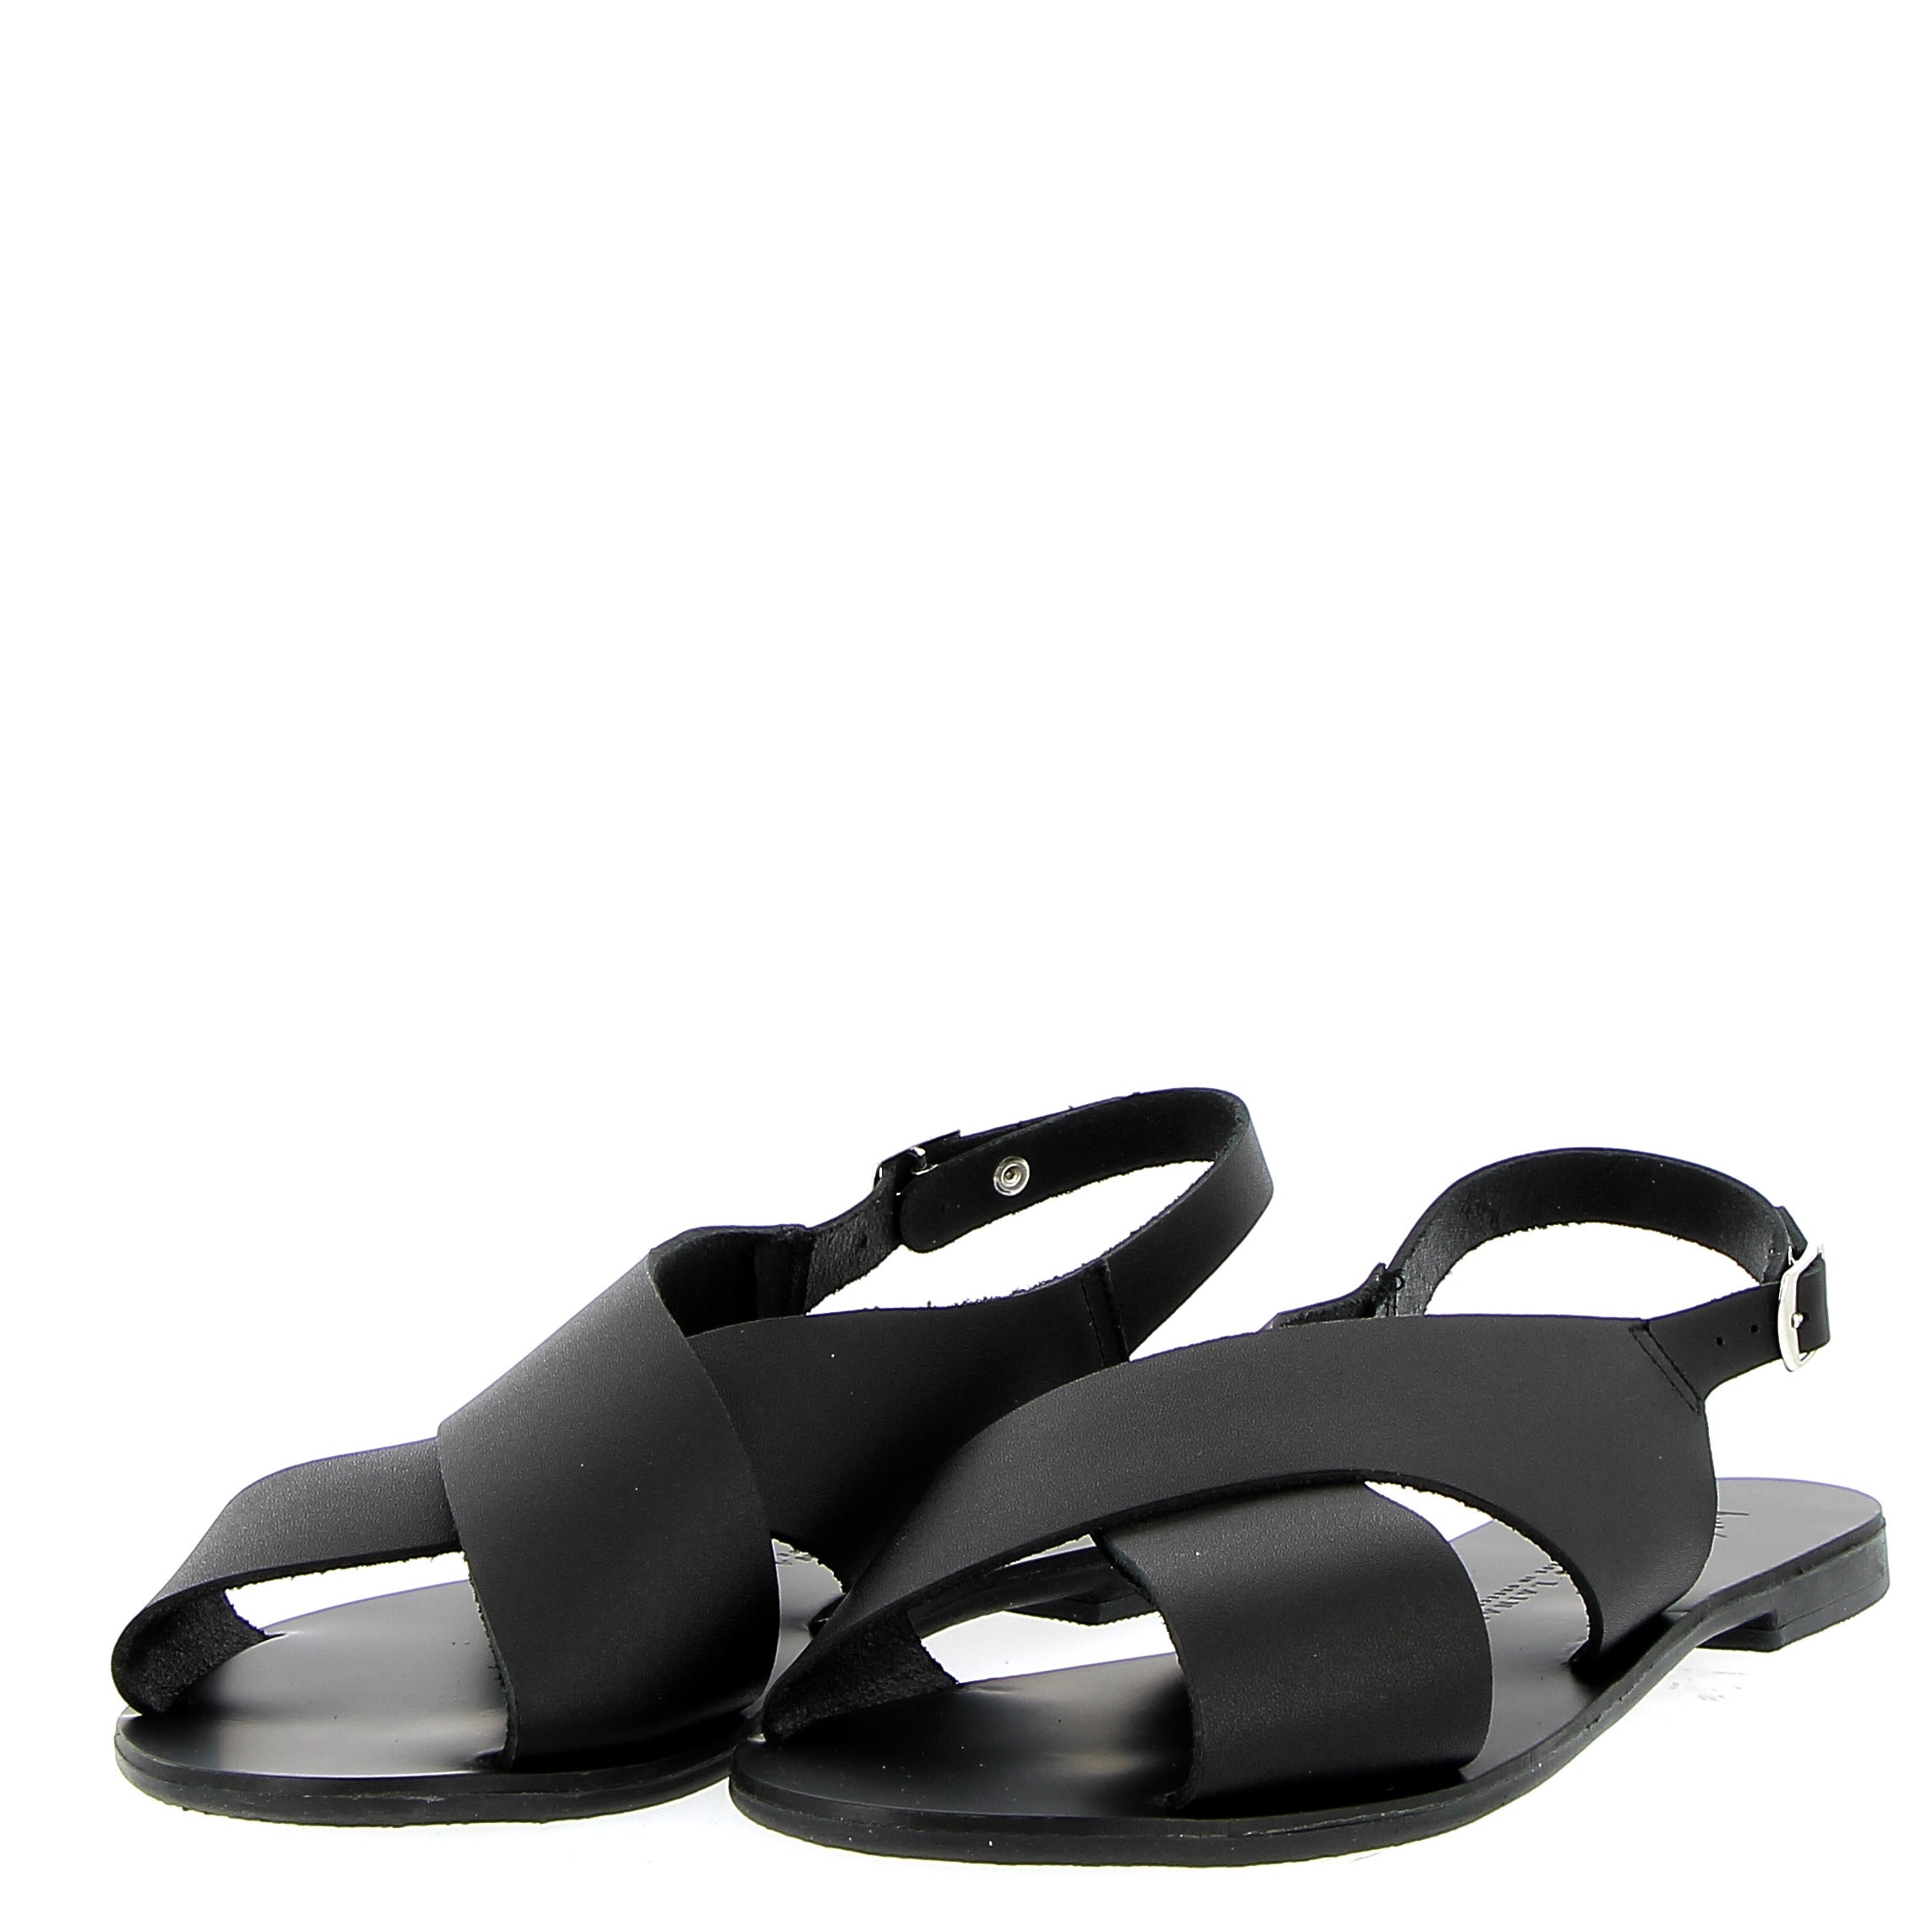 Crossed flat black leather sandal